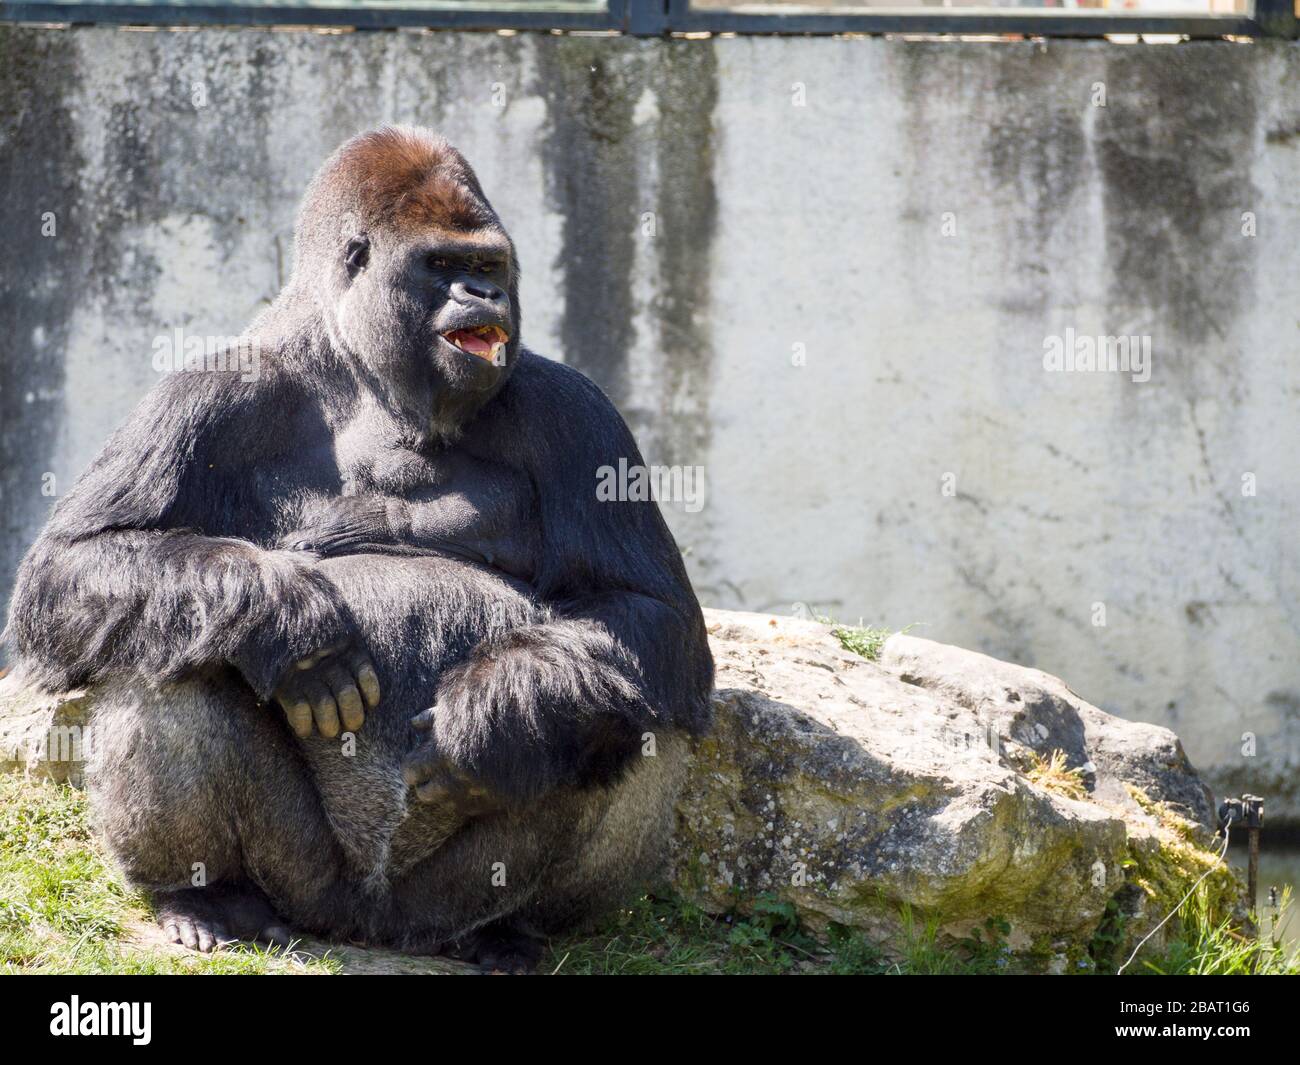 Riéndose Gorila Montaña: Un gran gorila de montaña masculino parece reír mostrando sus dientes mientras espera a que la comida sea sacudida a su manera. Foto de stock